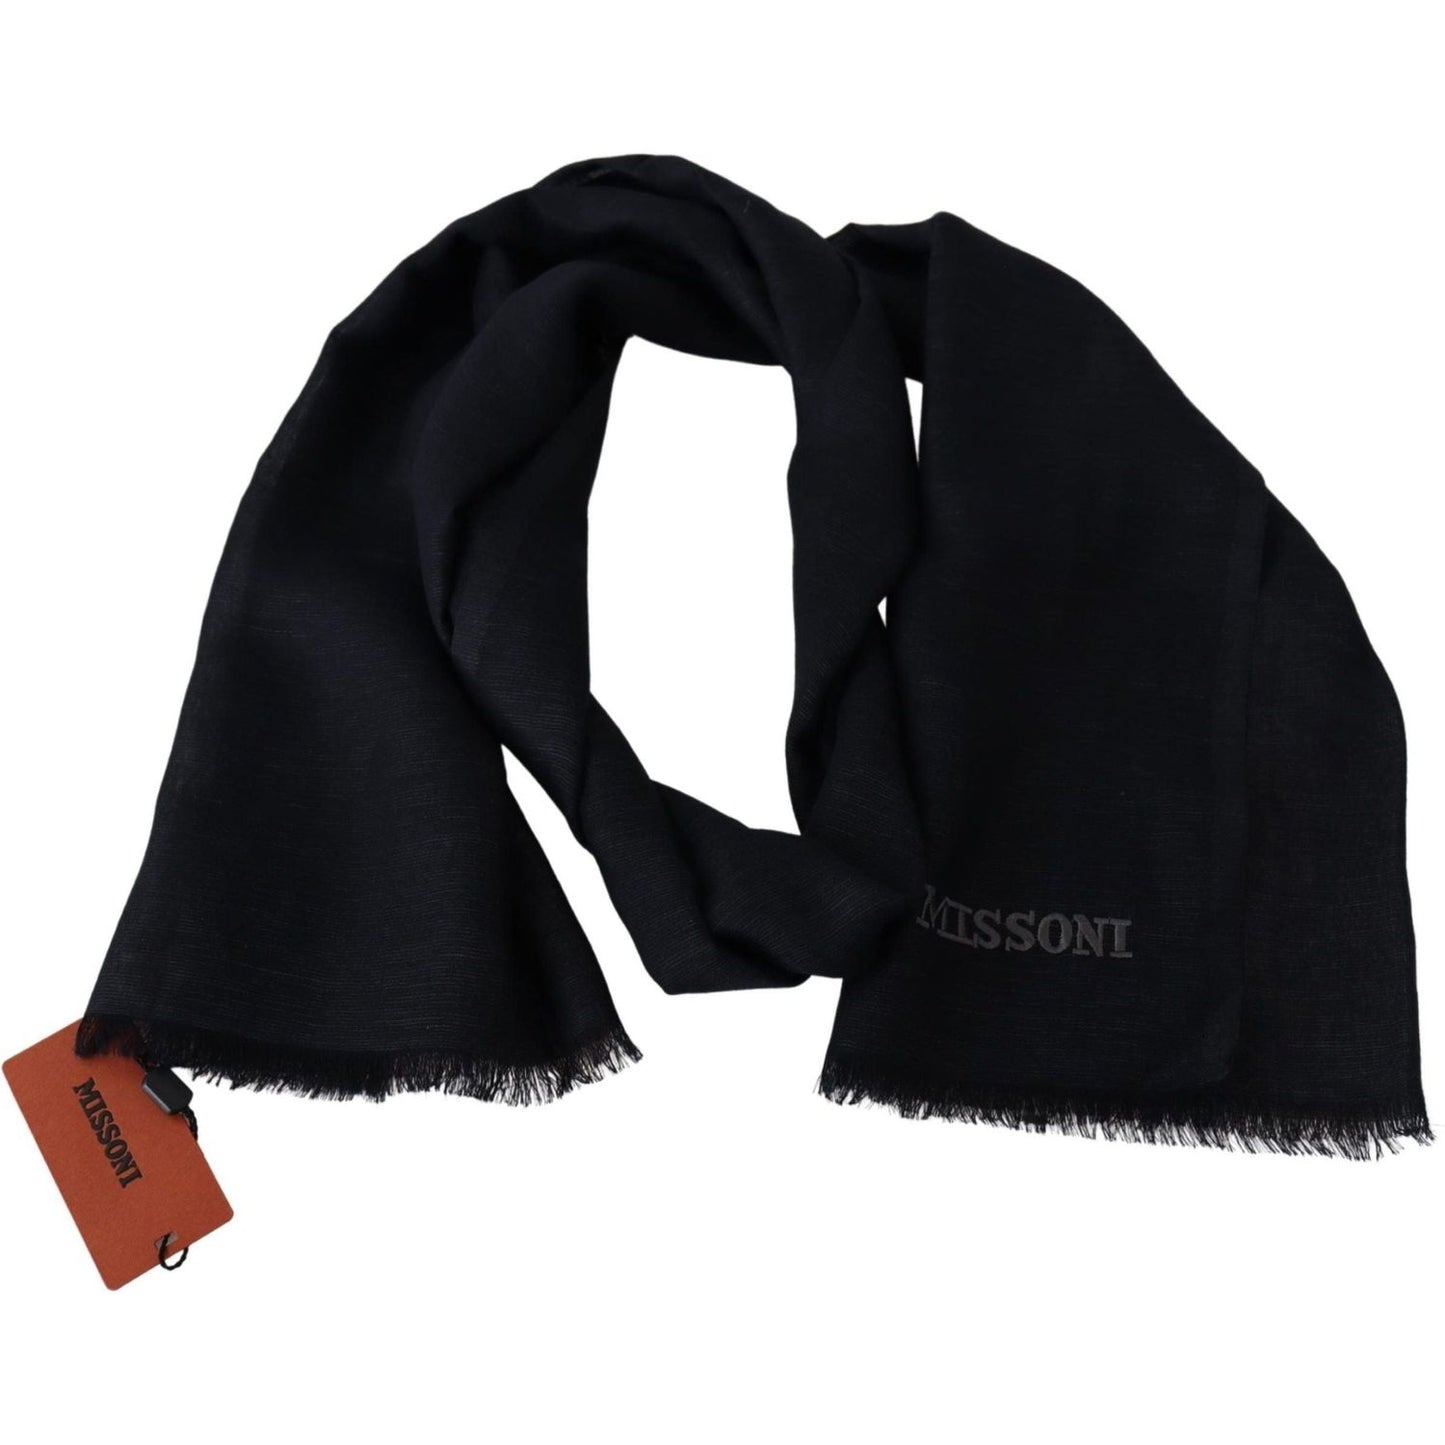 Missoni Elegant Unisex Wool Scarf with Fringes and Logo black-wool-knit-unisex-neck-wrap-fringe-scarf